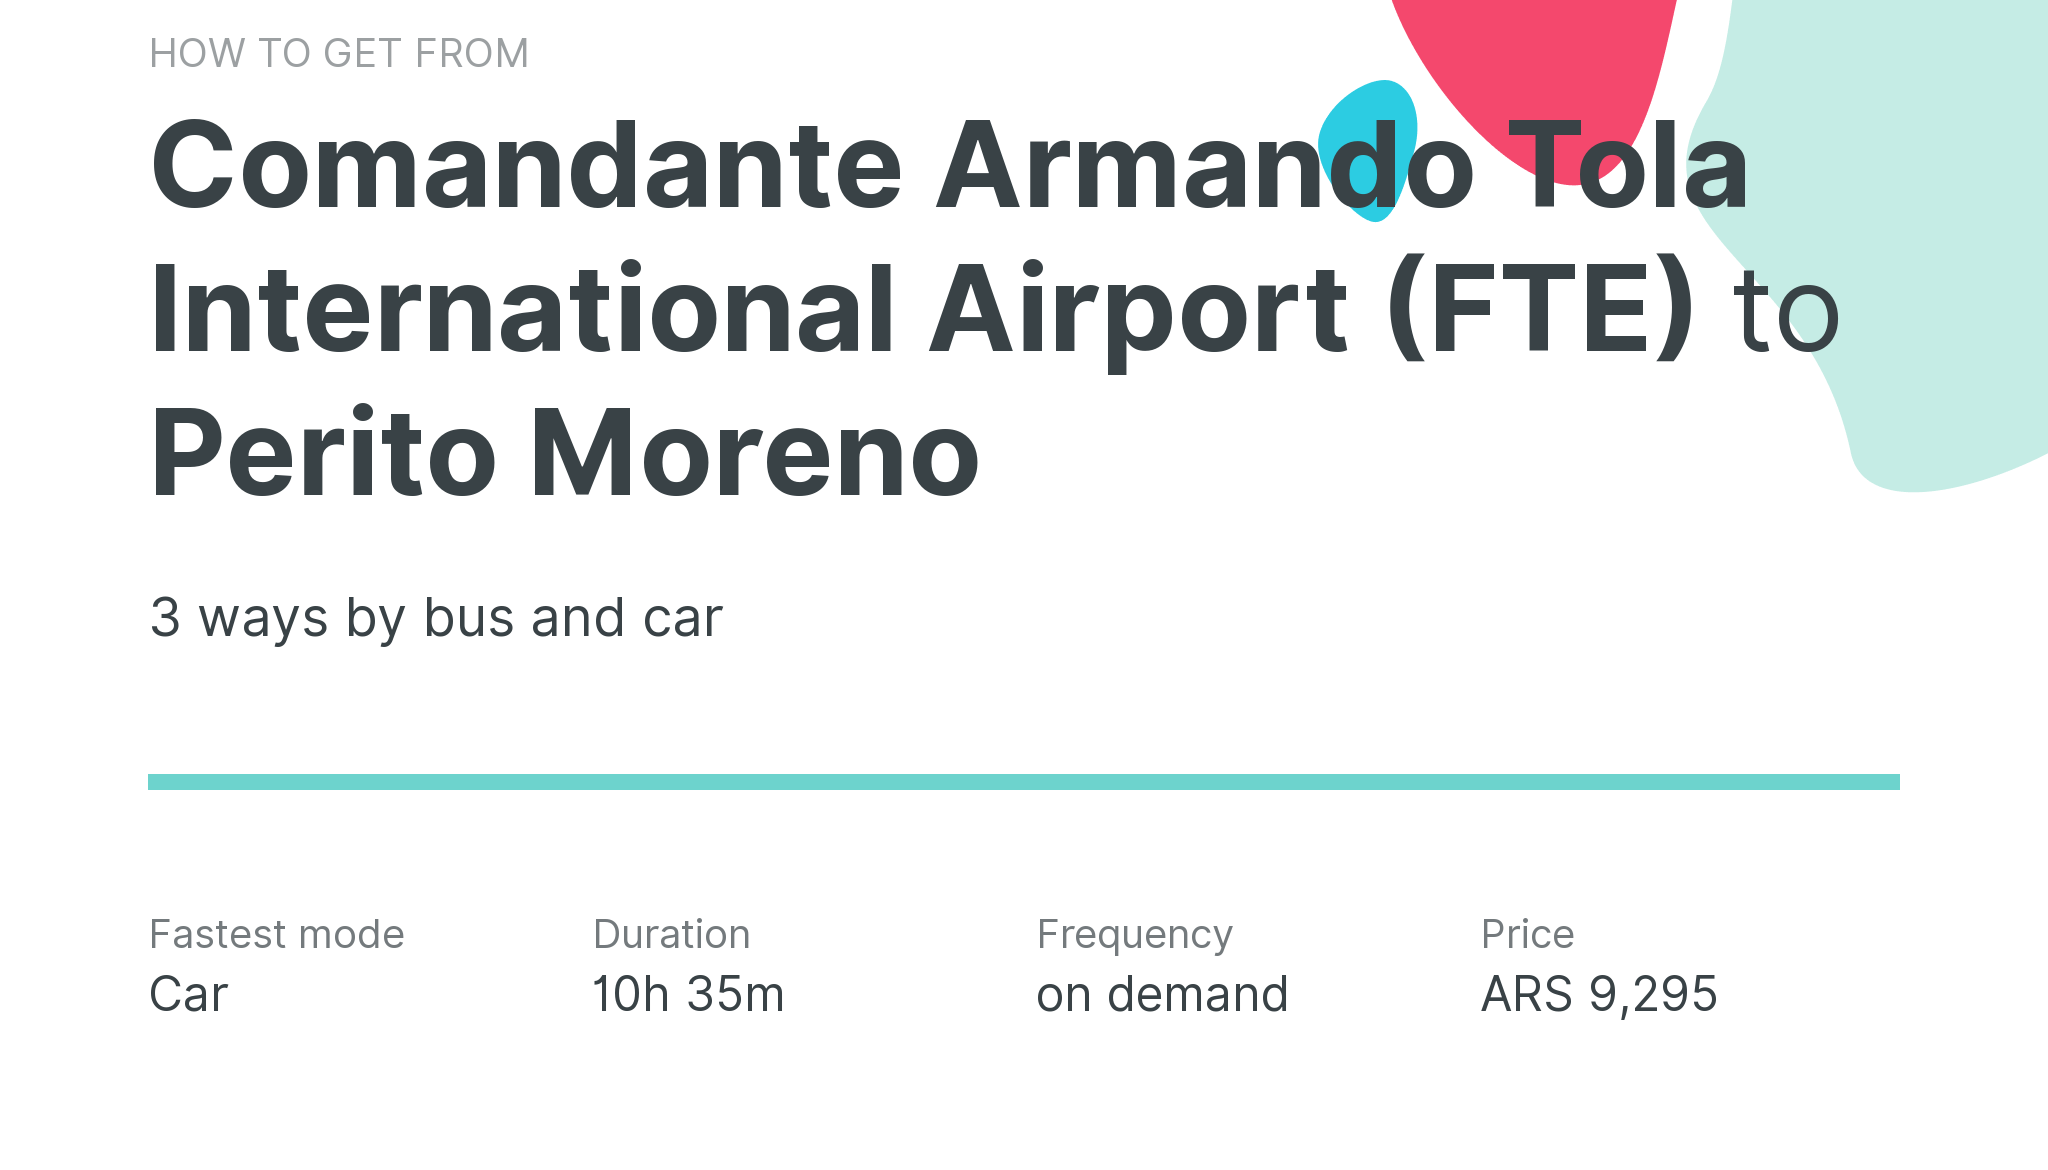 How do I get from Comandante Armando Tola International Airport (FTE) to Perito Moreno